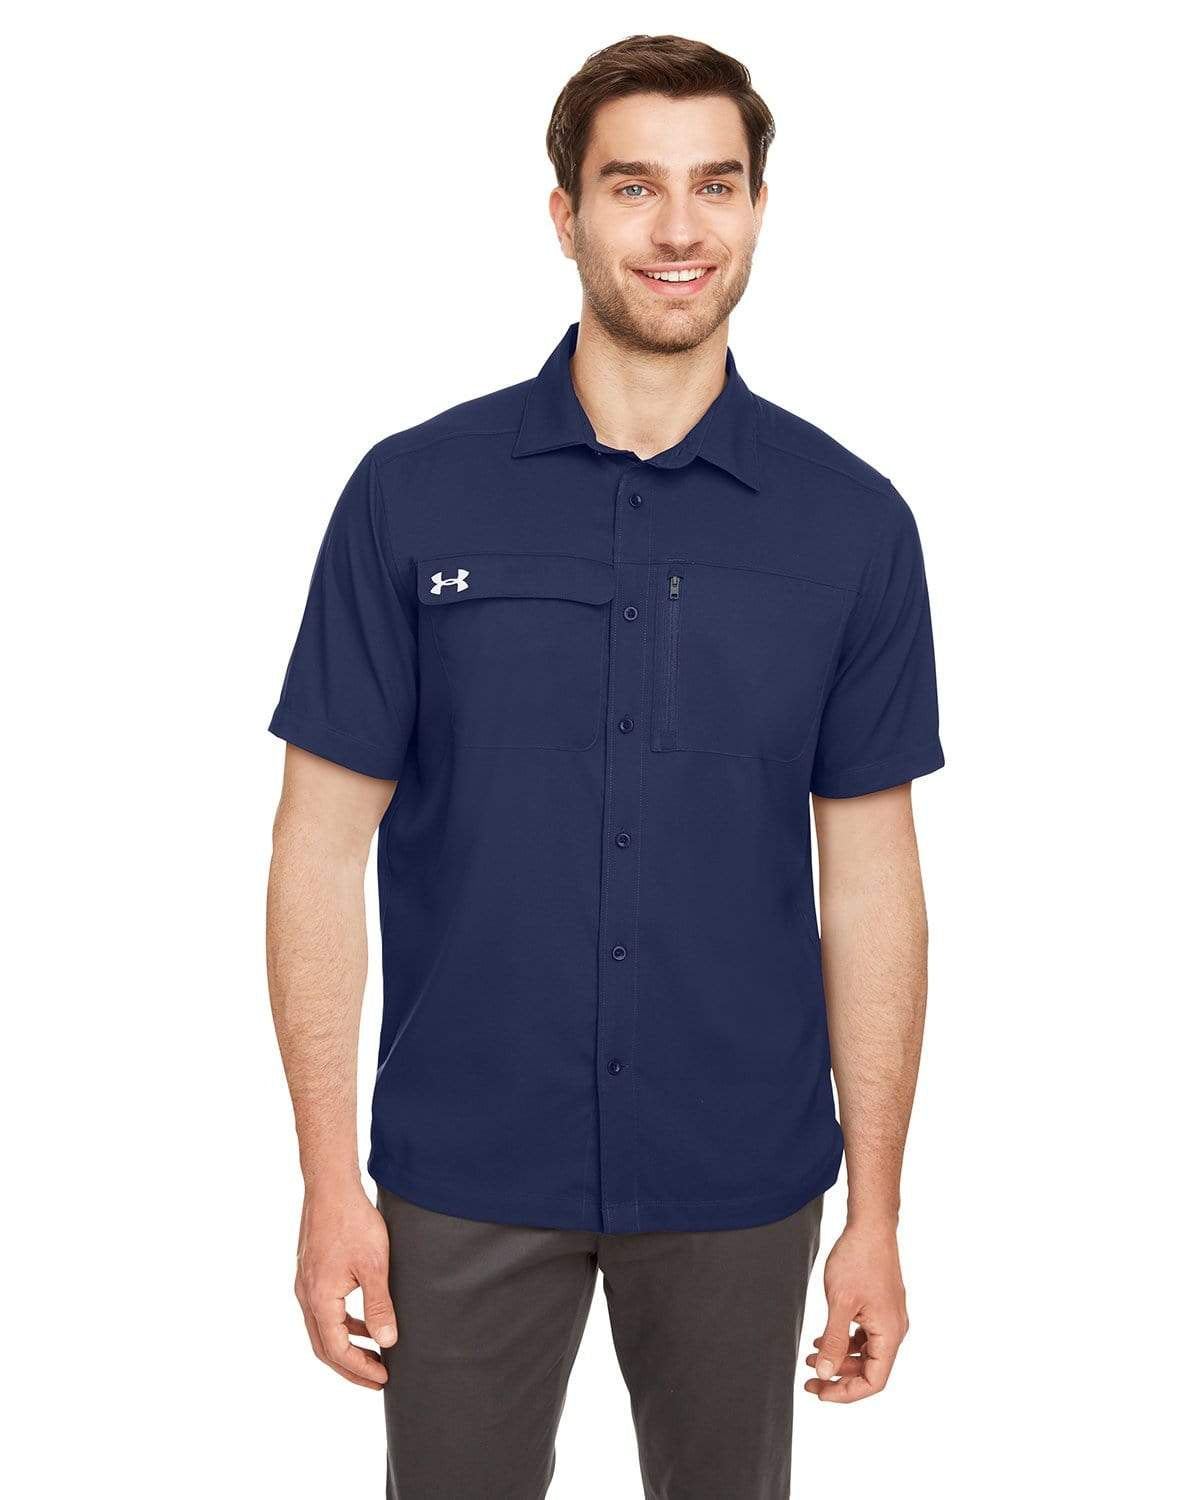 UA Motivator Coach's Button Up Shirt Size XL